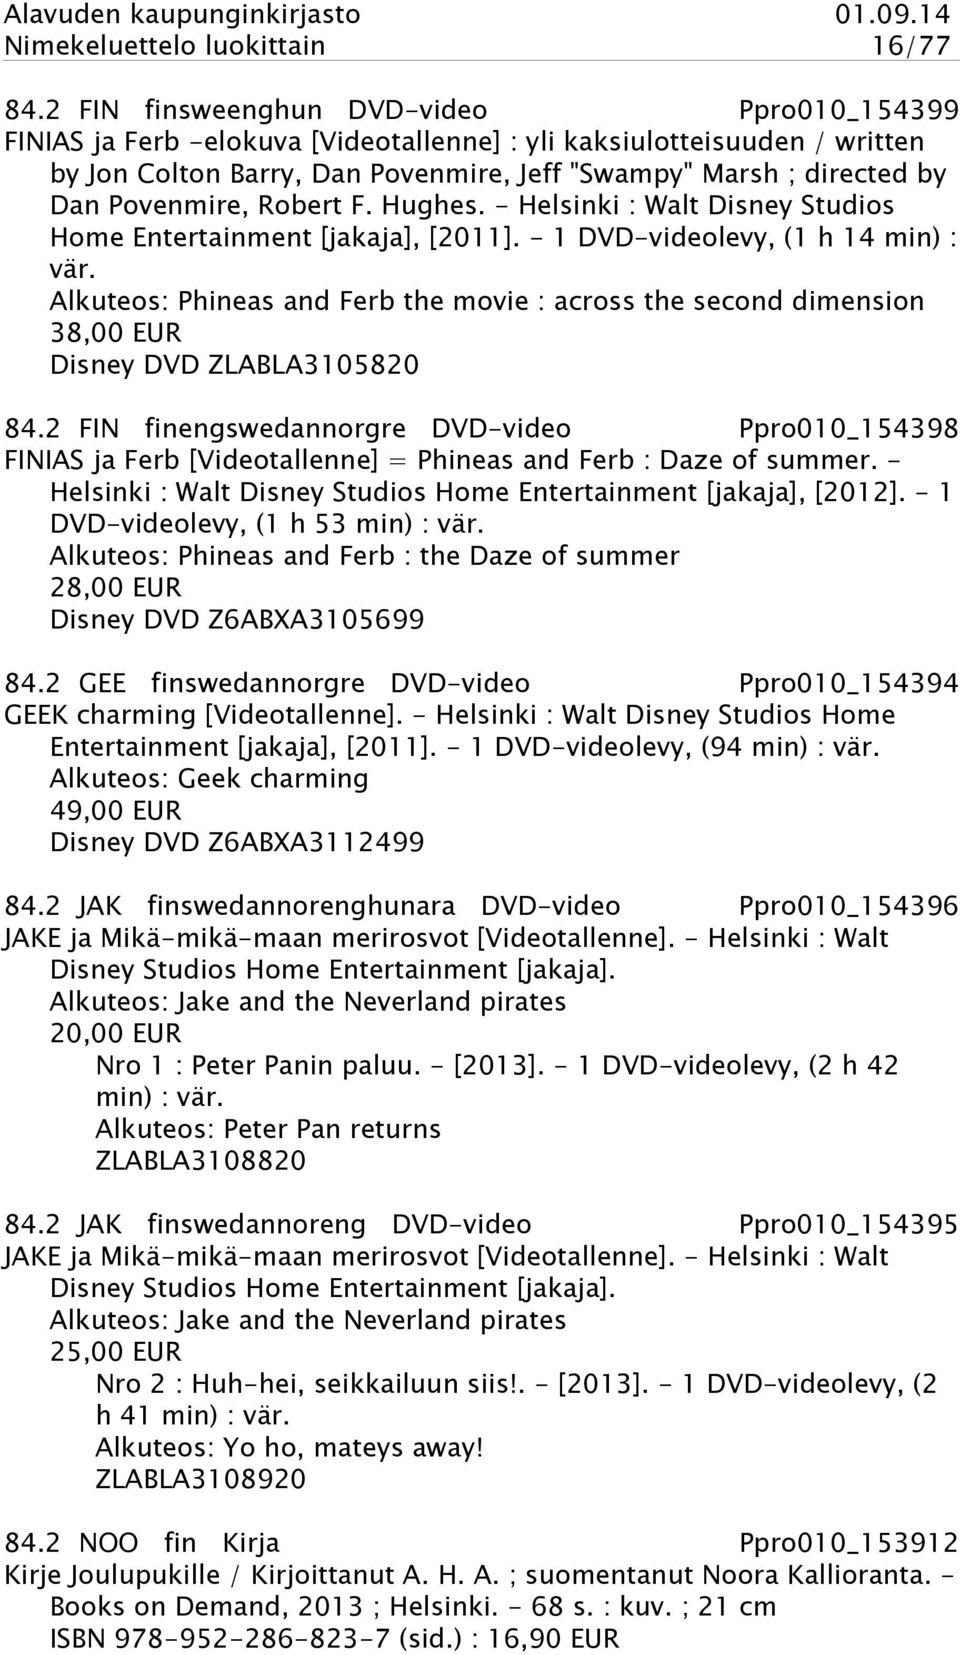 Povenmire, Robert F. Hughes. - Helsinki : Walt Disney Studios Home Entertainment [jakaja], [2011]. - 1 DVD-videolevy, (1 h 14 min) : vär.